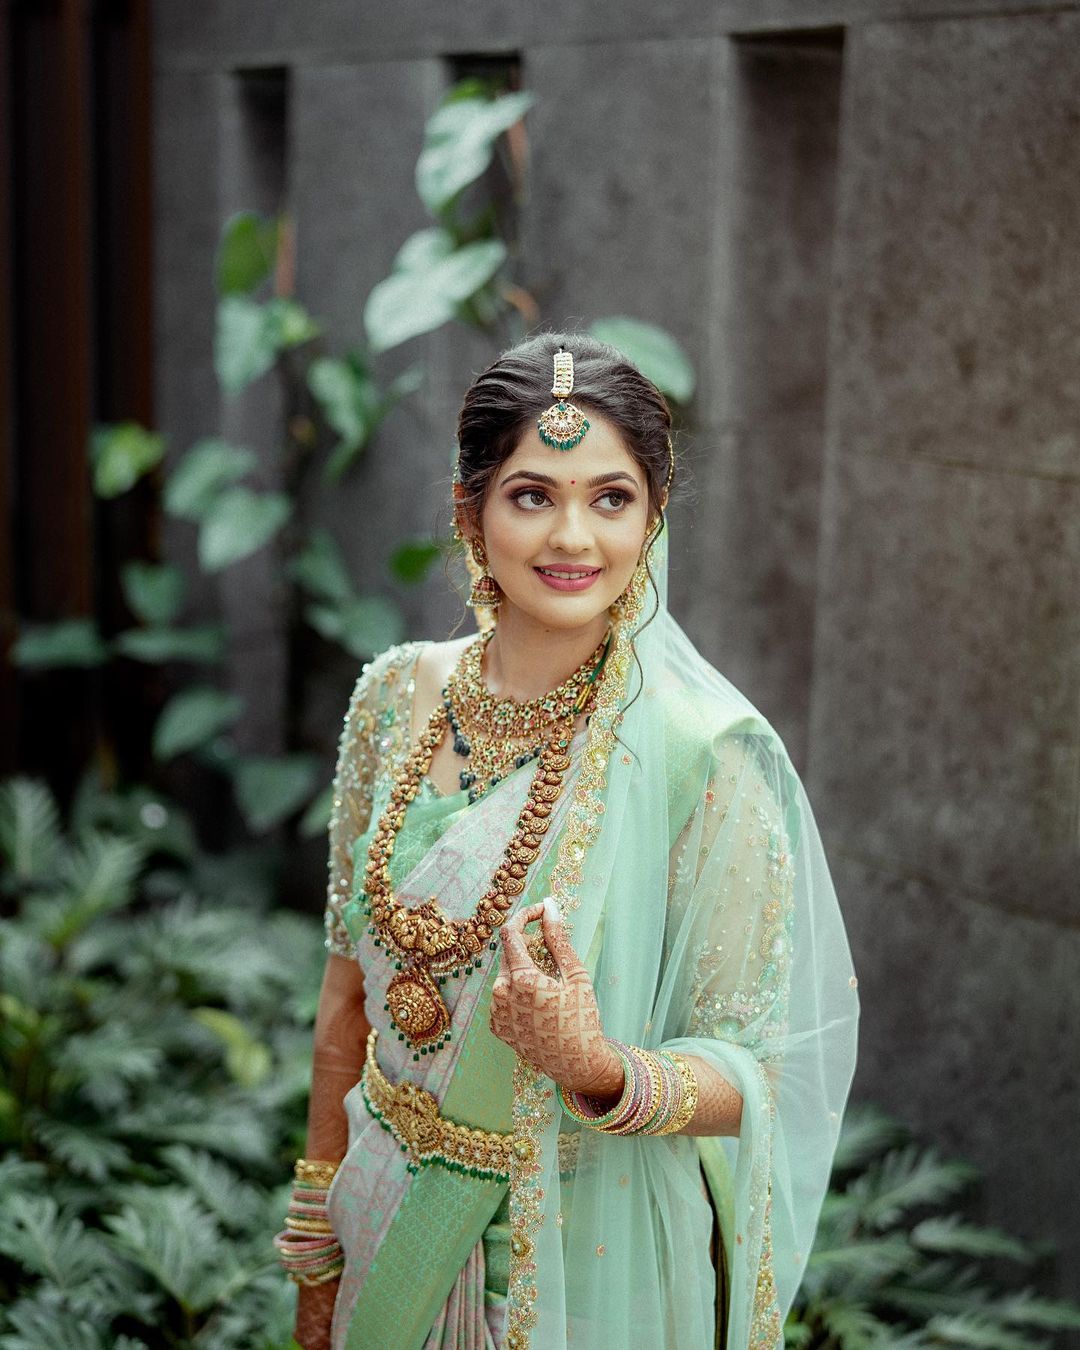 South Indian bridal look with dupatta-bridal saree photos-wedding saree images latest-hindu wedding sarees pictures-south indian bride images 